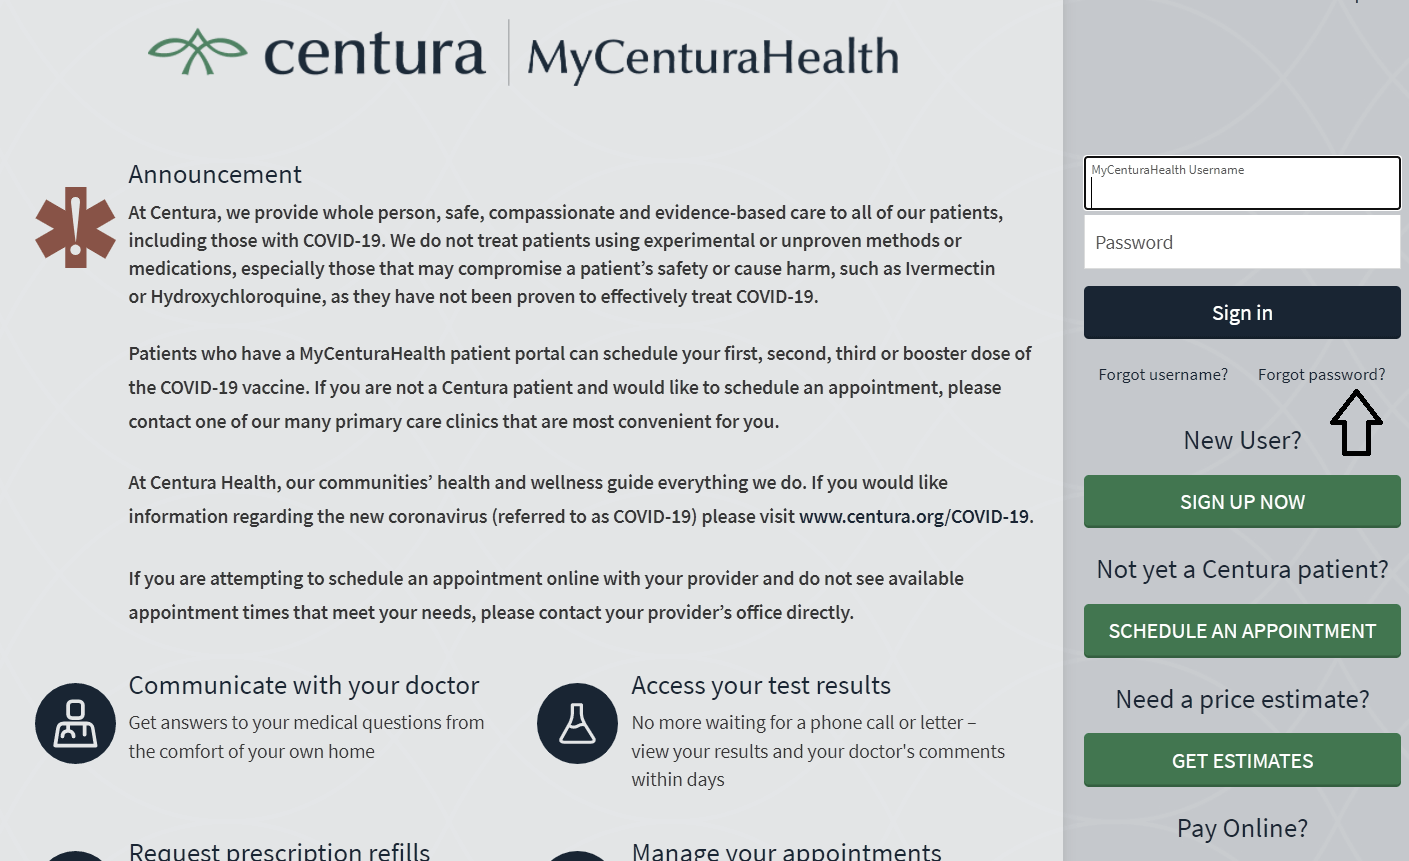 click on forgot password in mycenturahealth patient portal